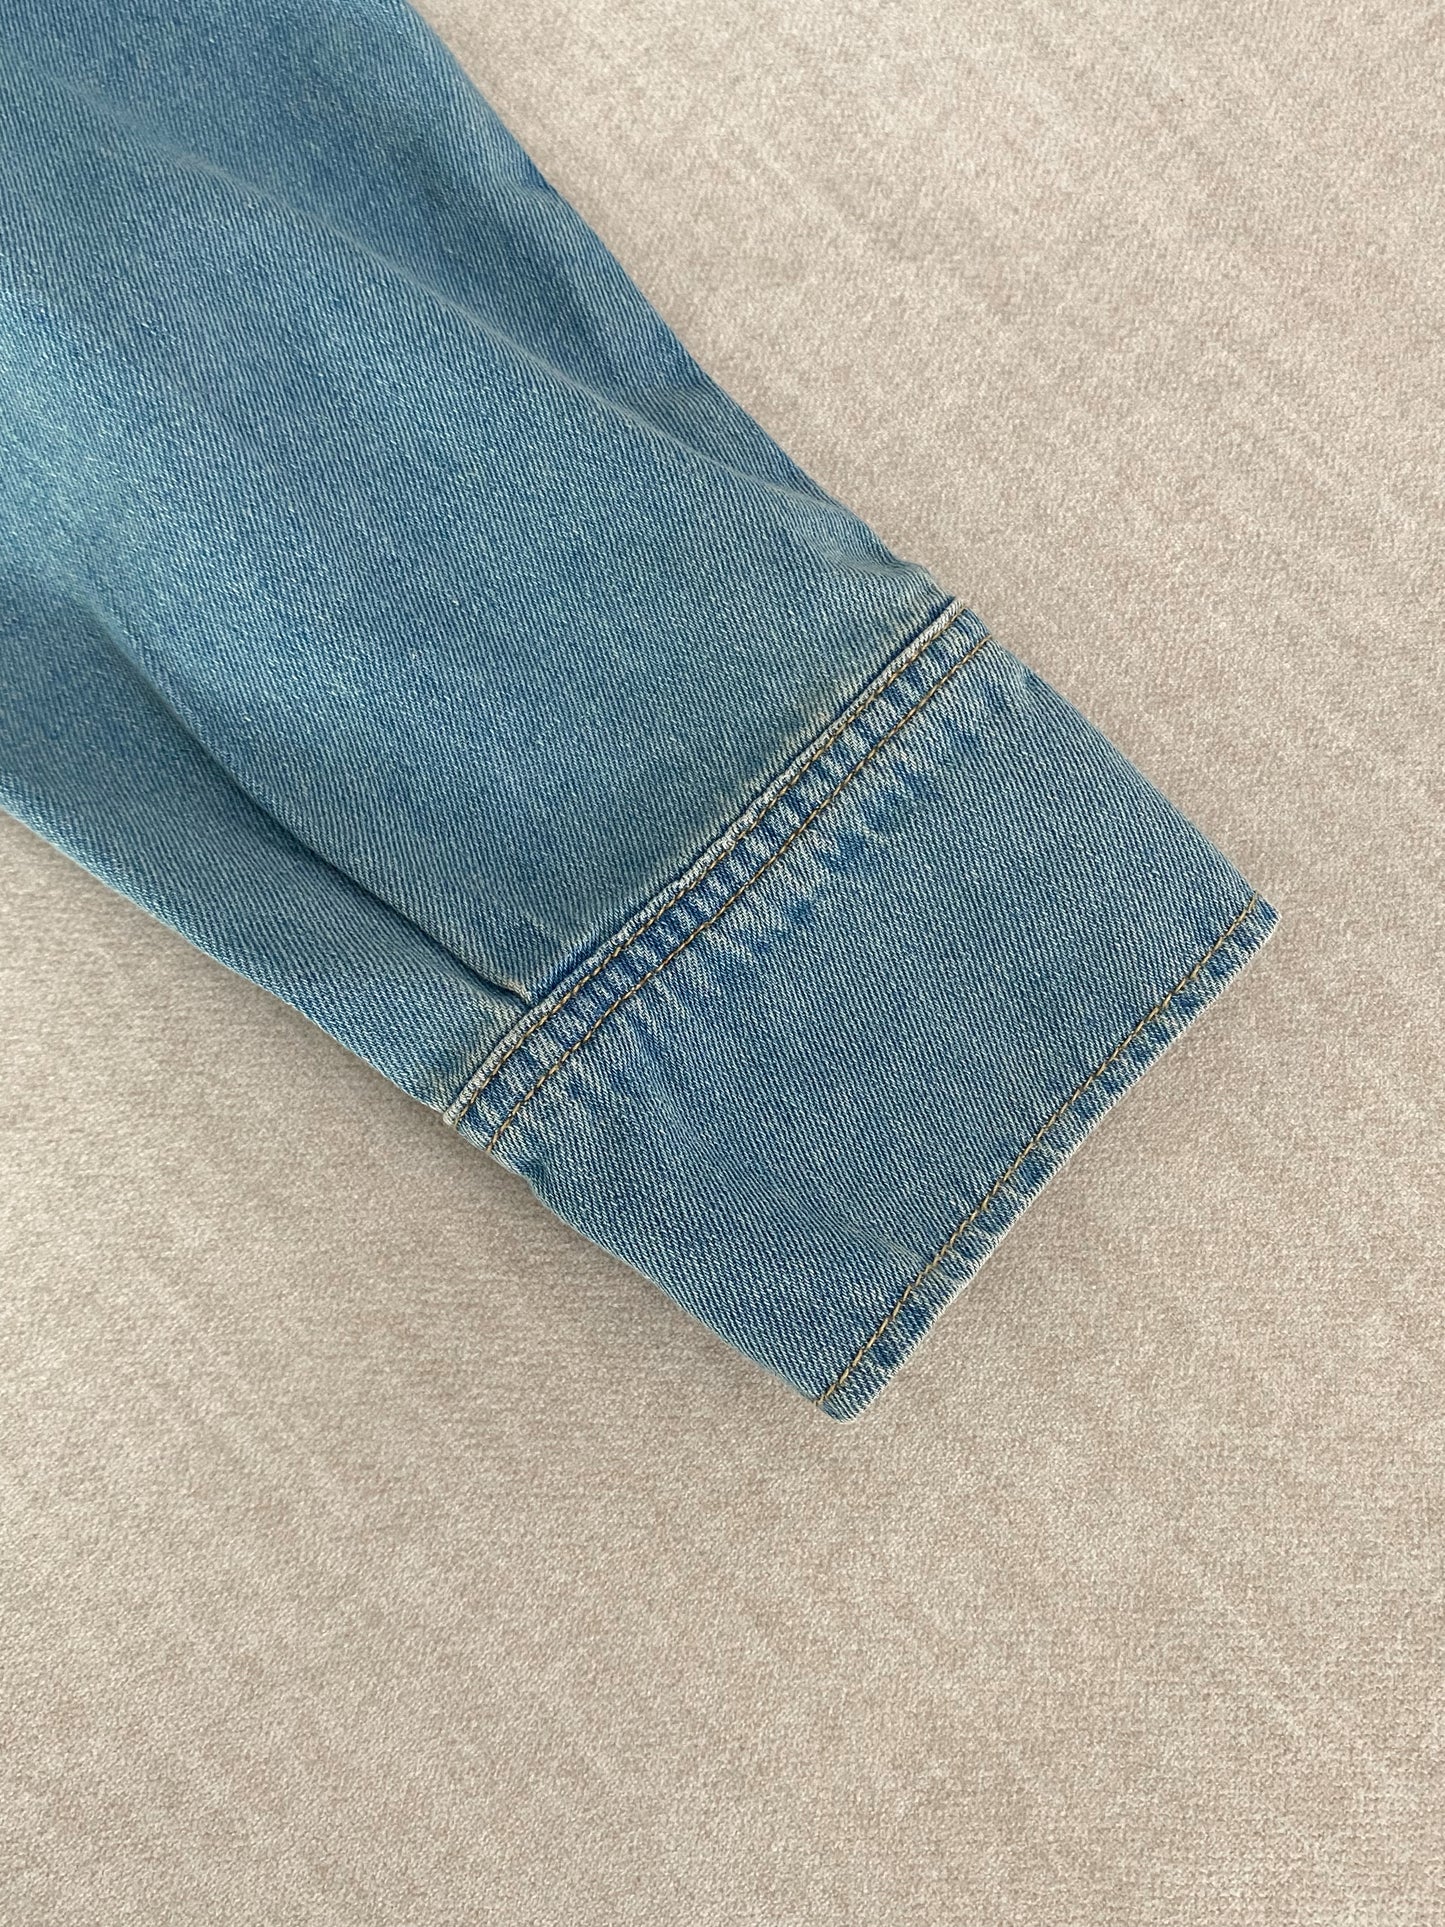 Women's shirt VINTAGE jeans